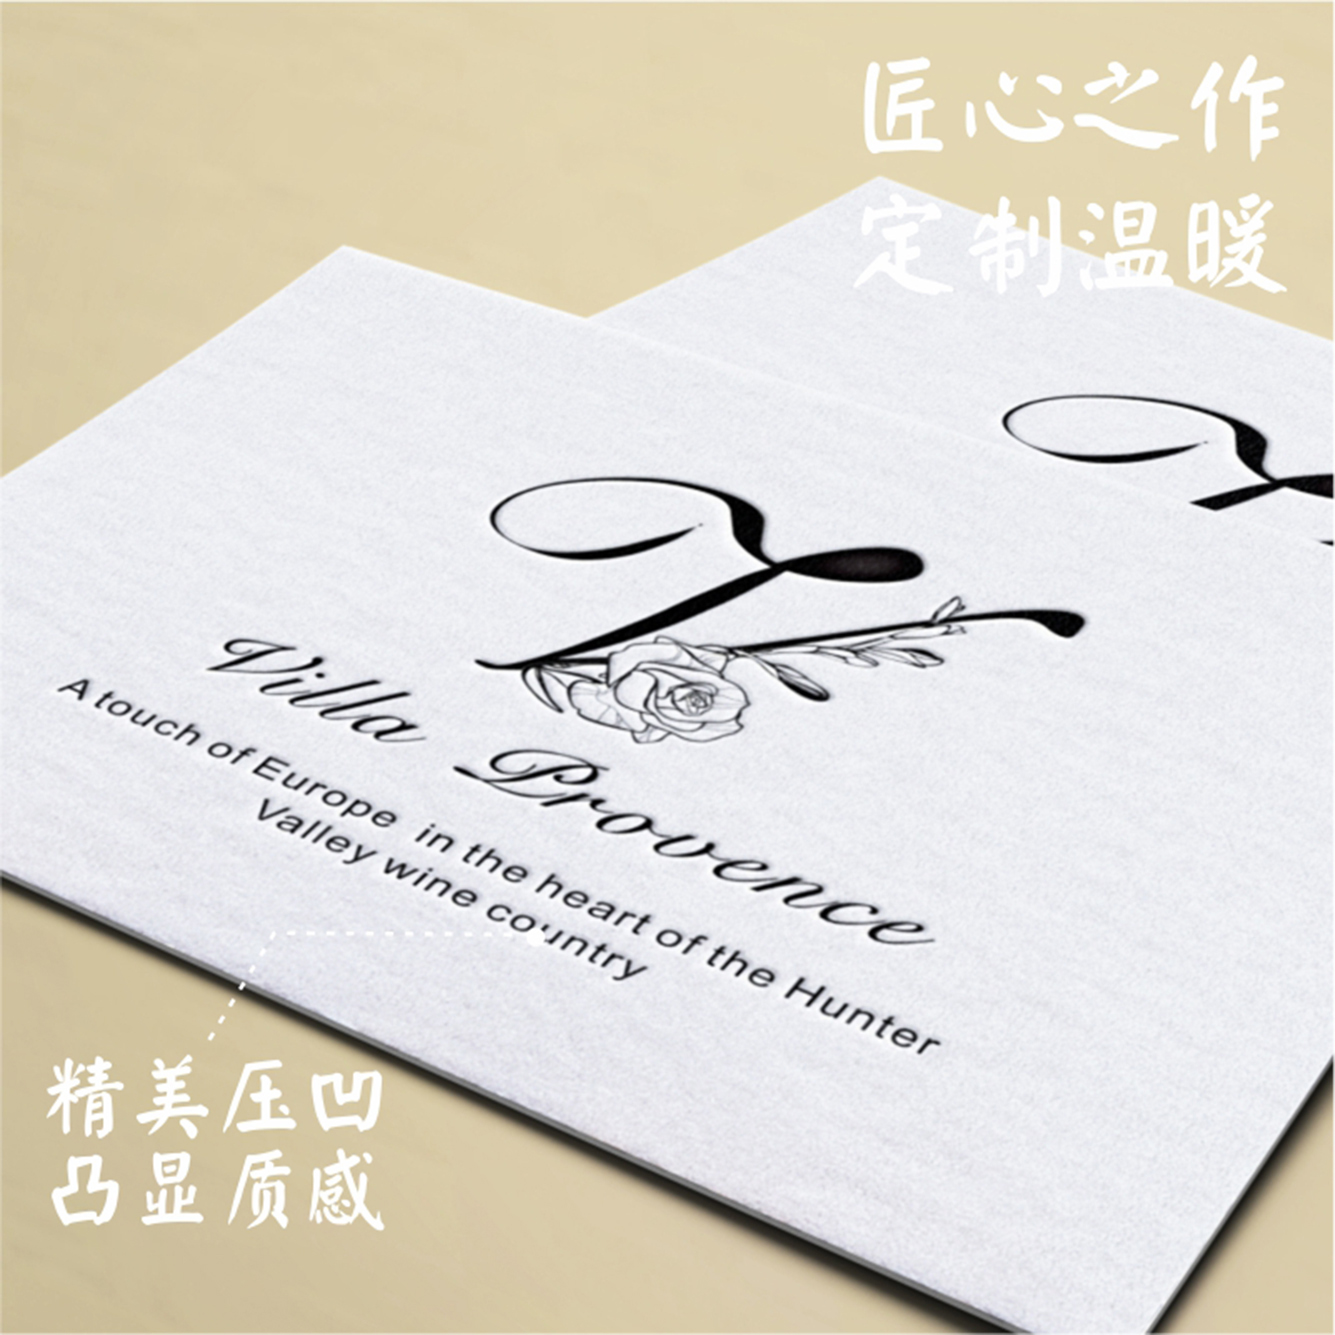 维尔德棉纸名片设计制作印刷高档个性压凹凹凸压痕卡片淘宝名片